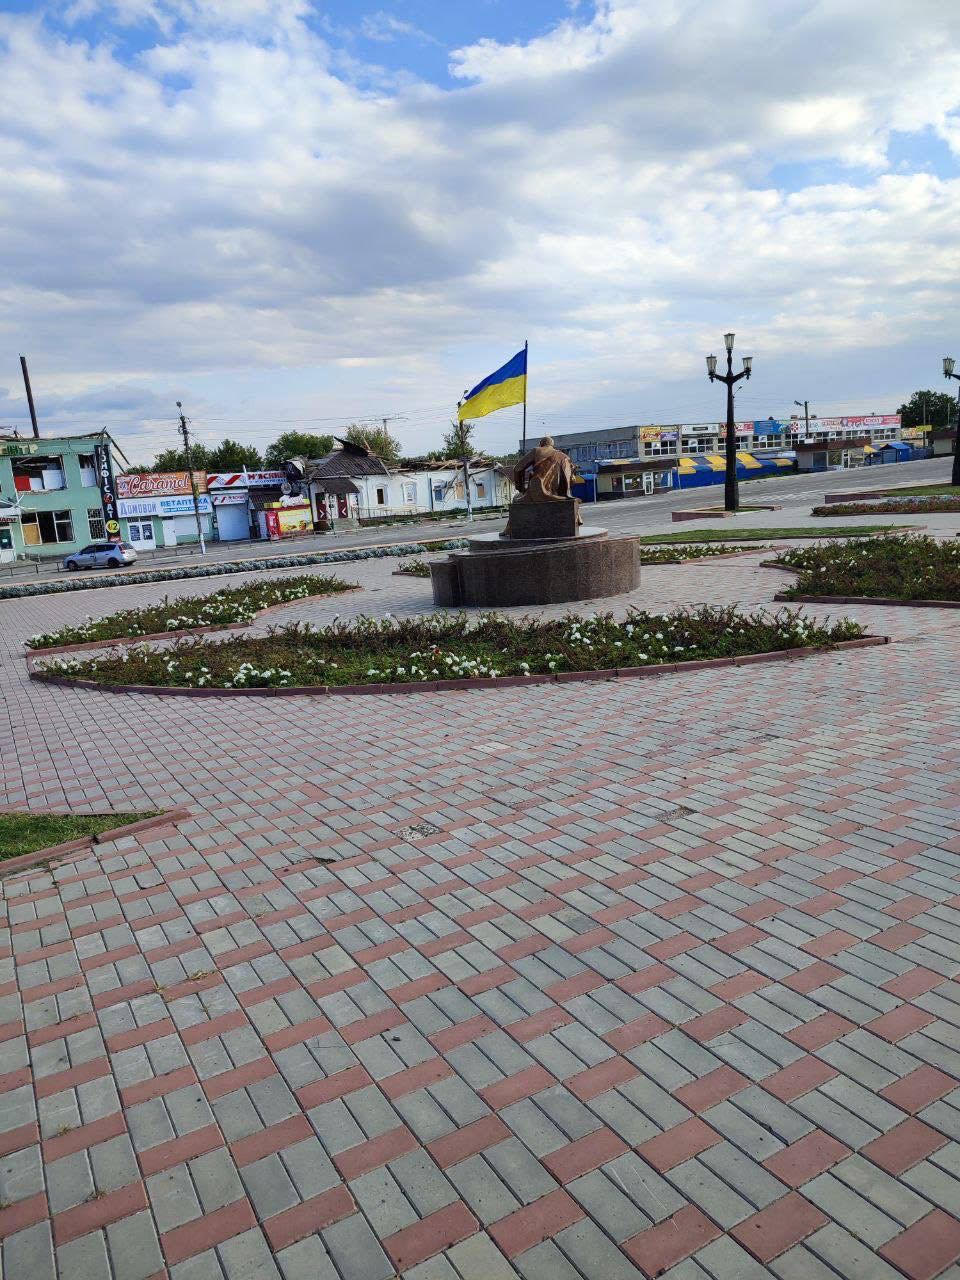 Украинский флаг над Балаклеей: итоги 197-го дня войны